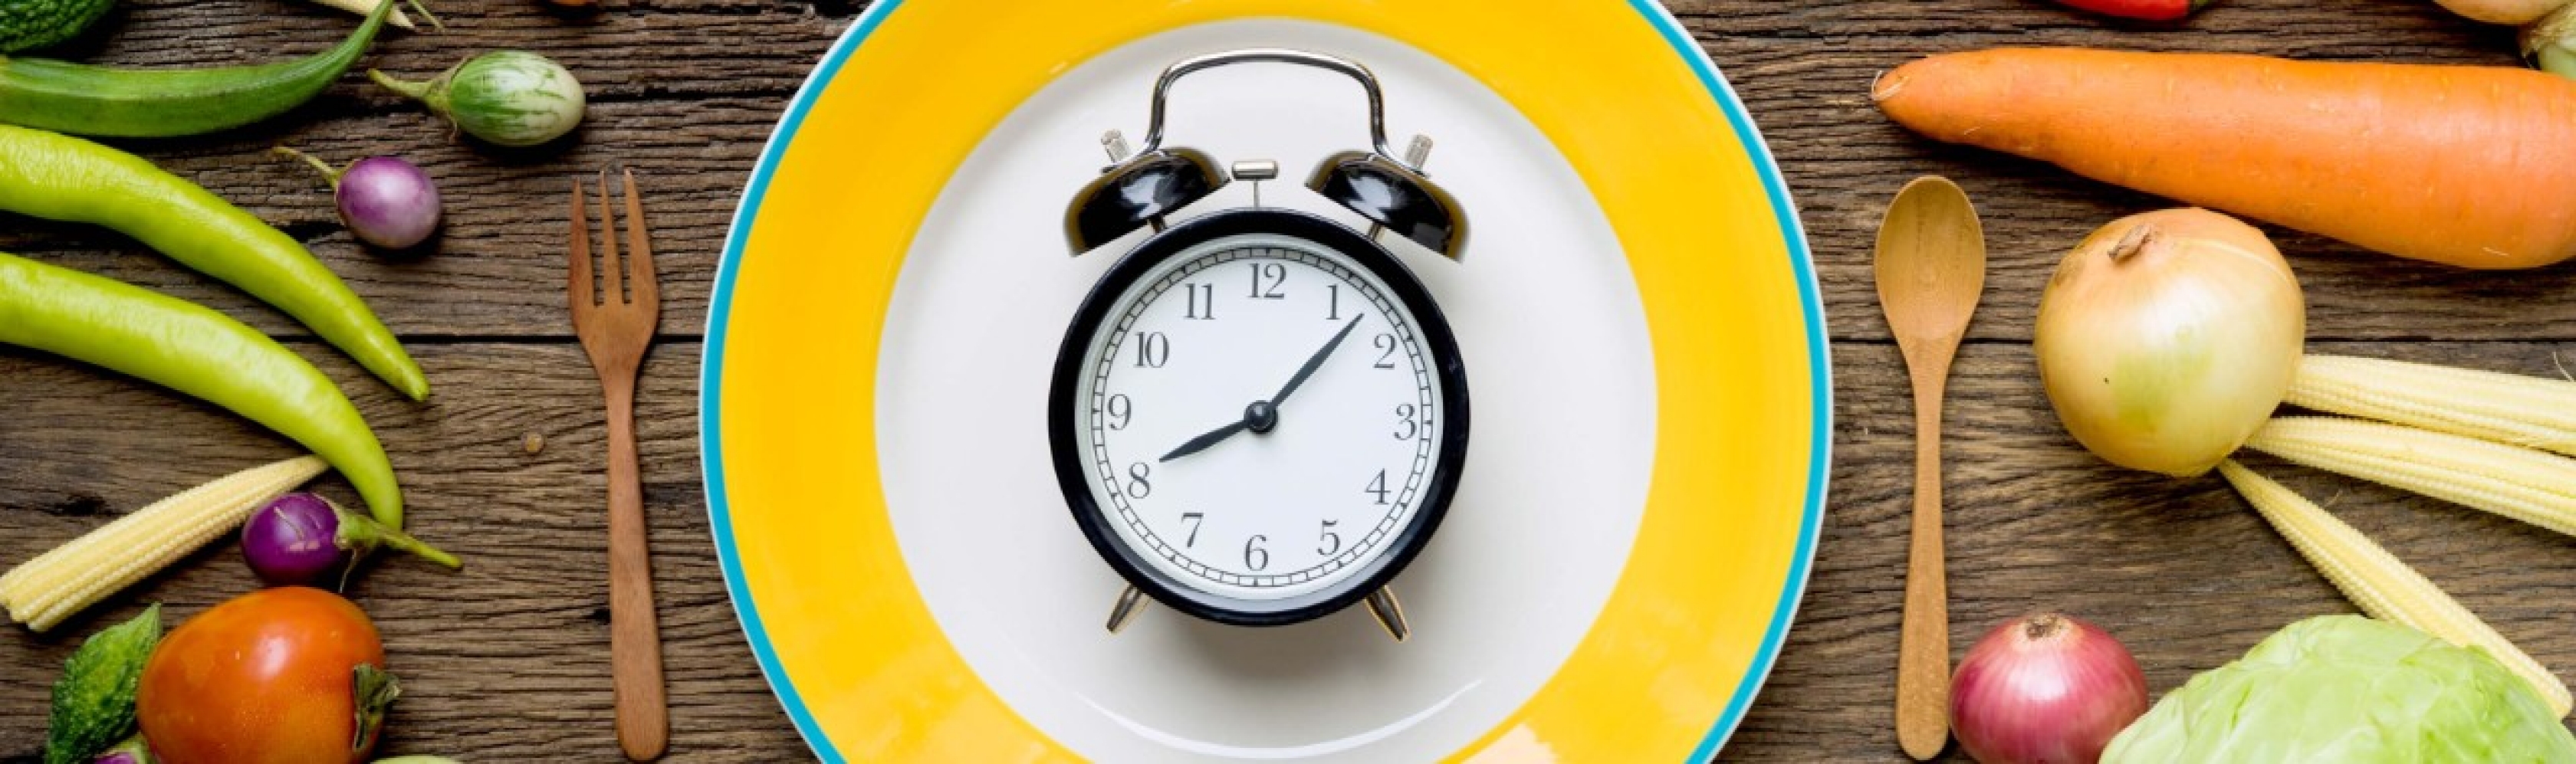 Una sveglia su un piatto visualizza il risparmio di tempo ottenibile con il meal prep.